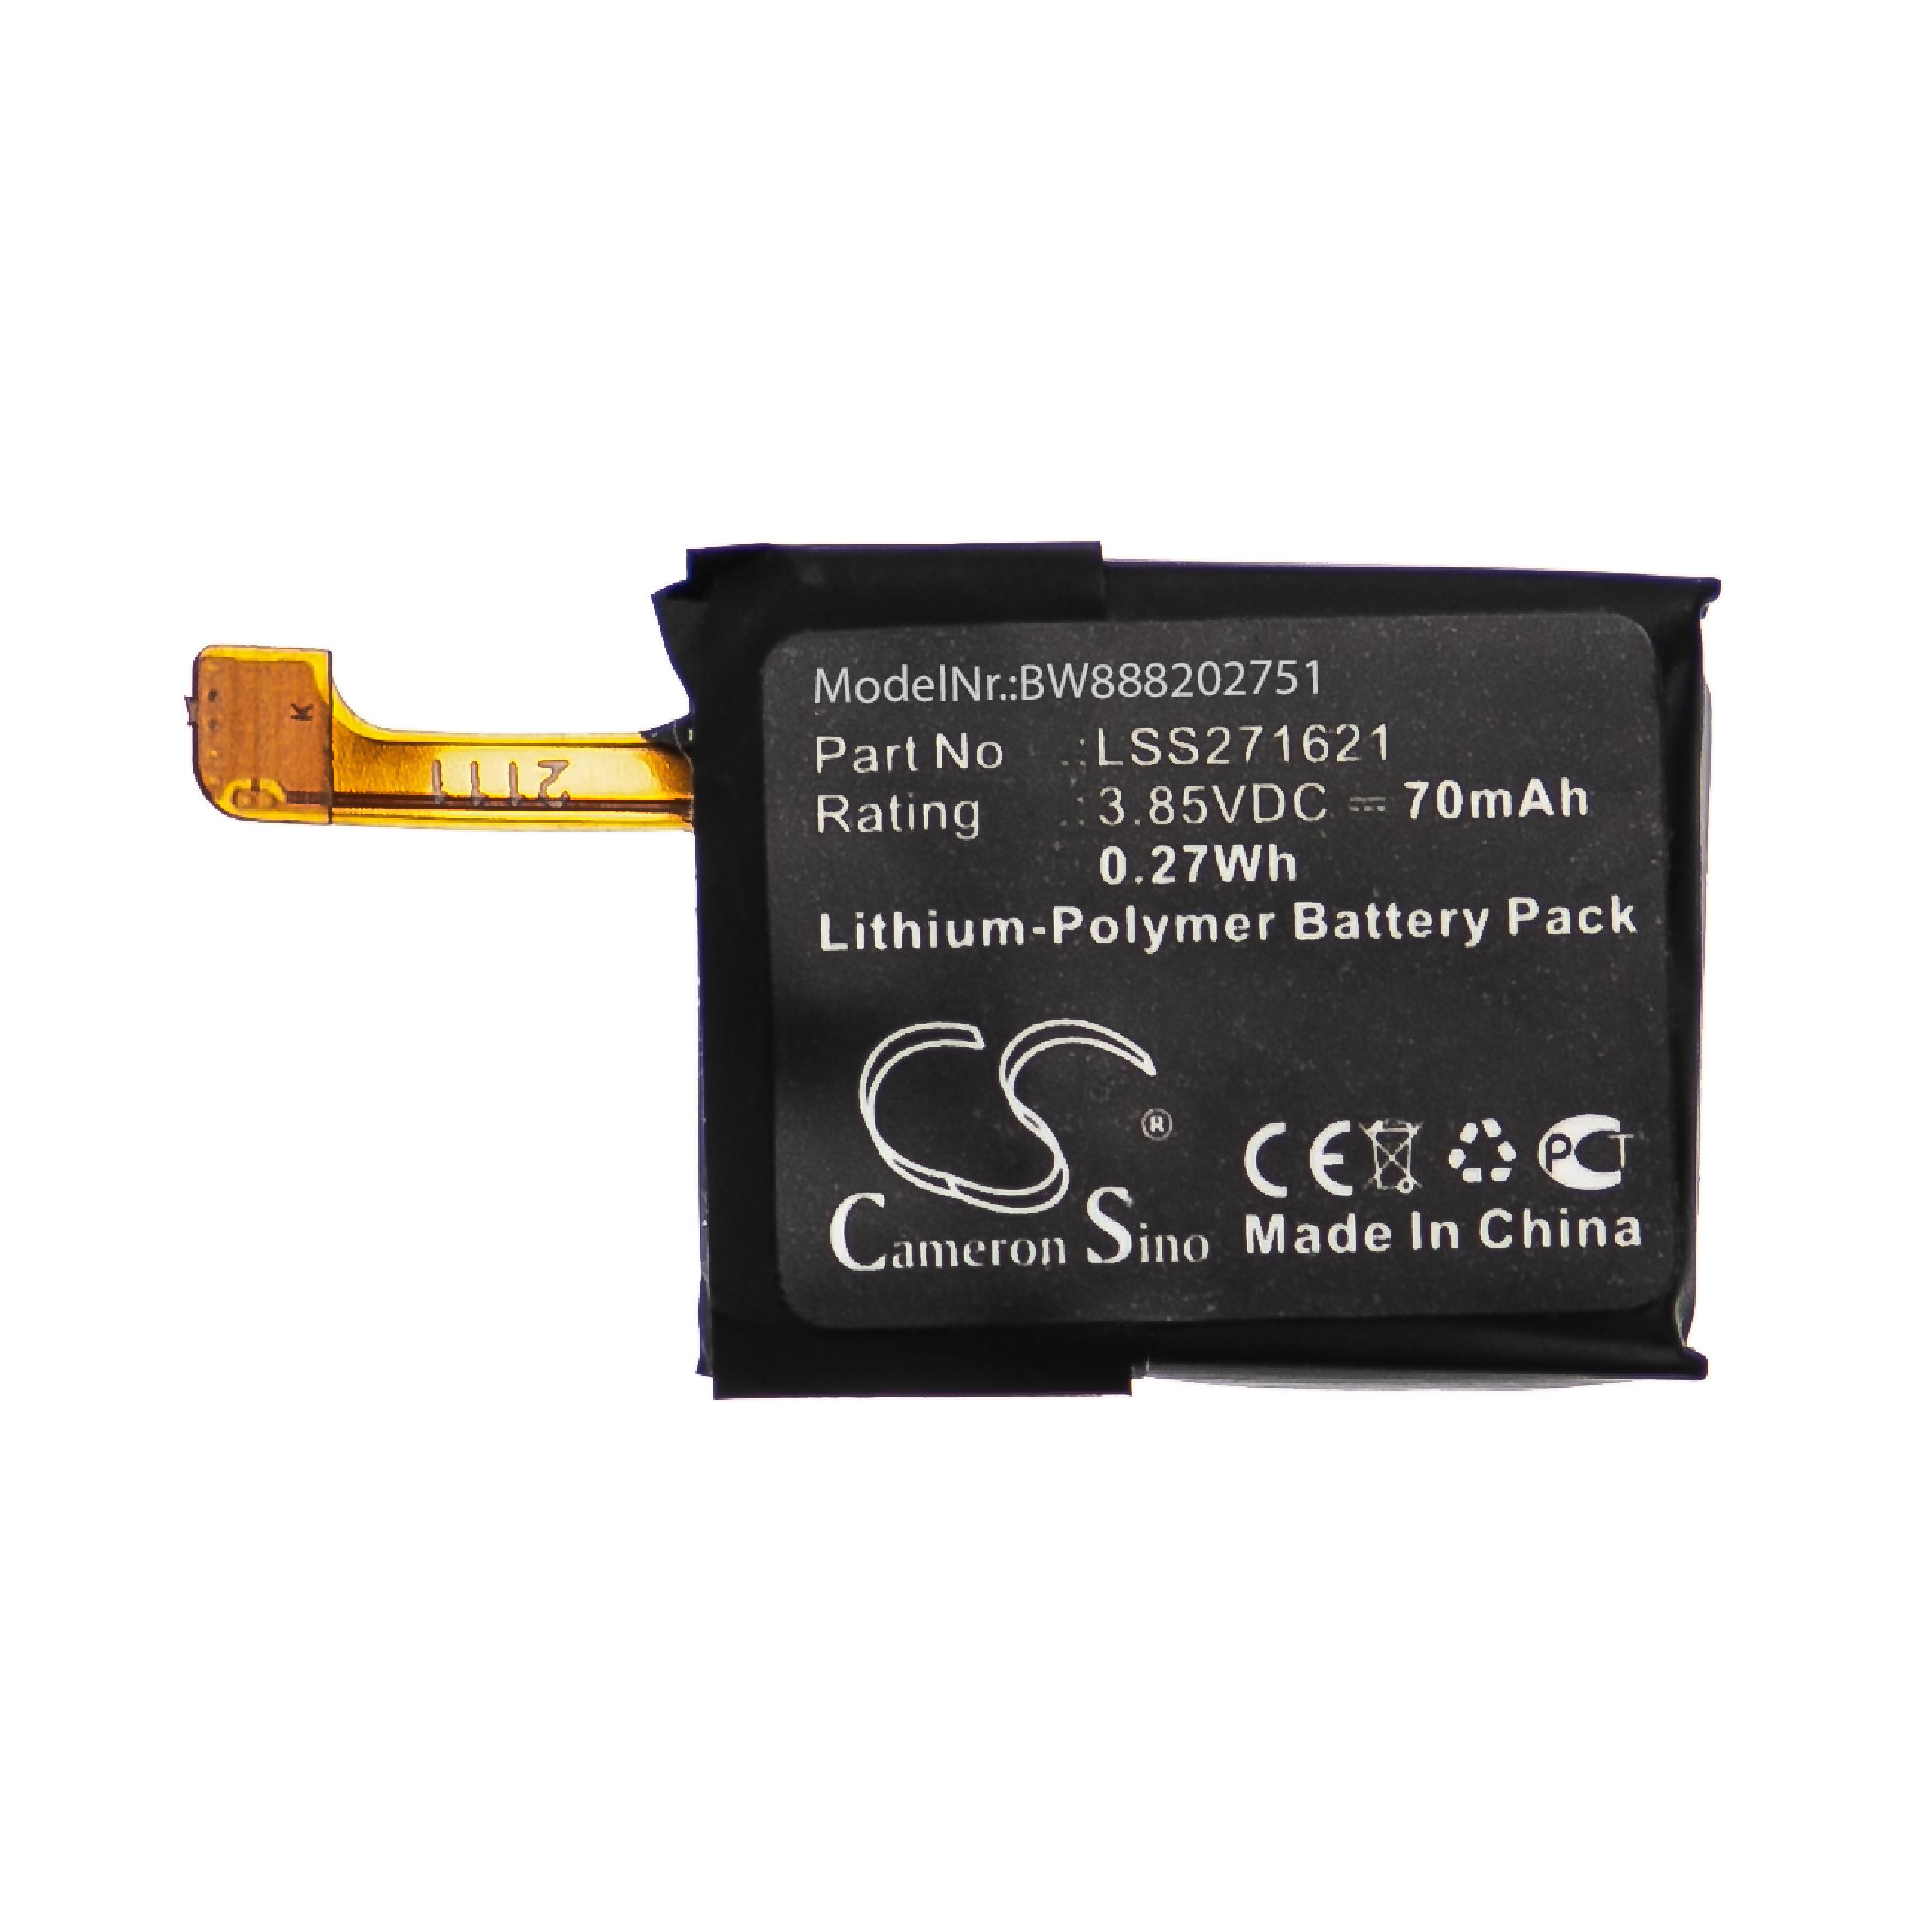 Batterie remplace Fitbit LSS271621 pour montre connectée - 70mAh 3,85V Li-polymère